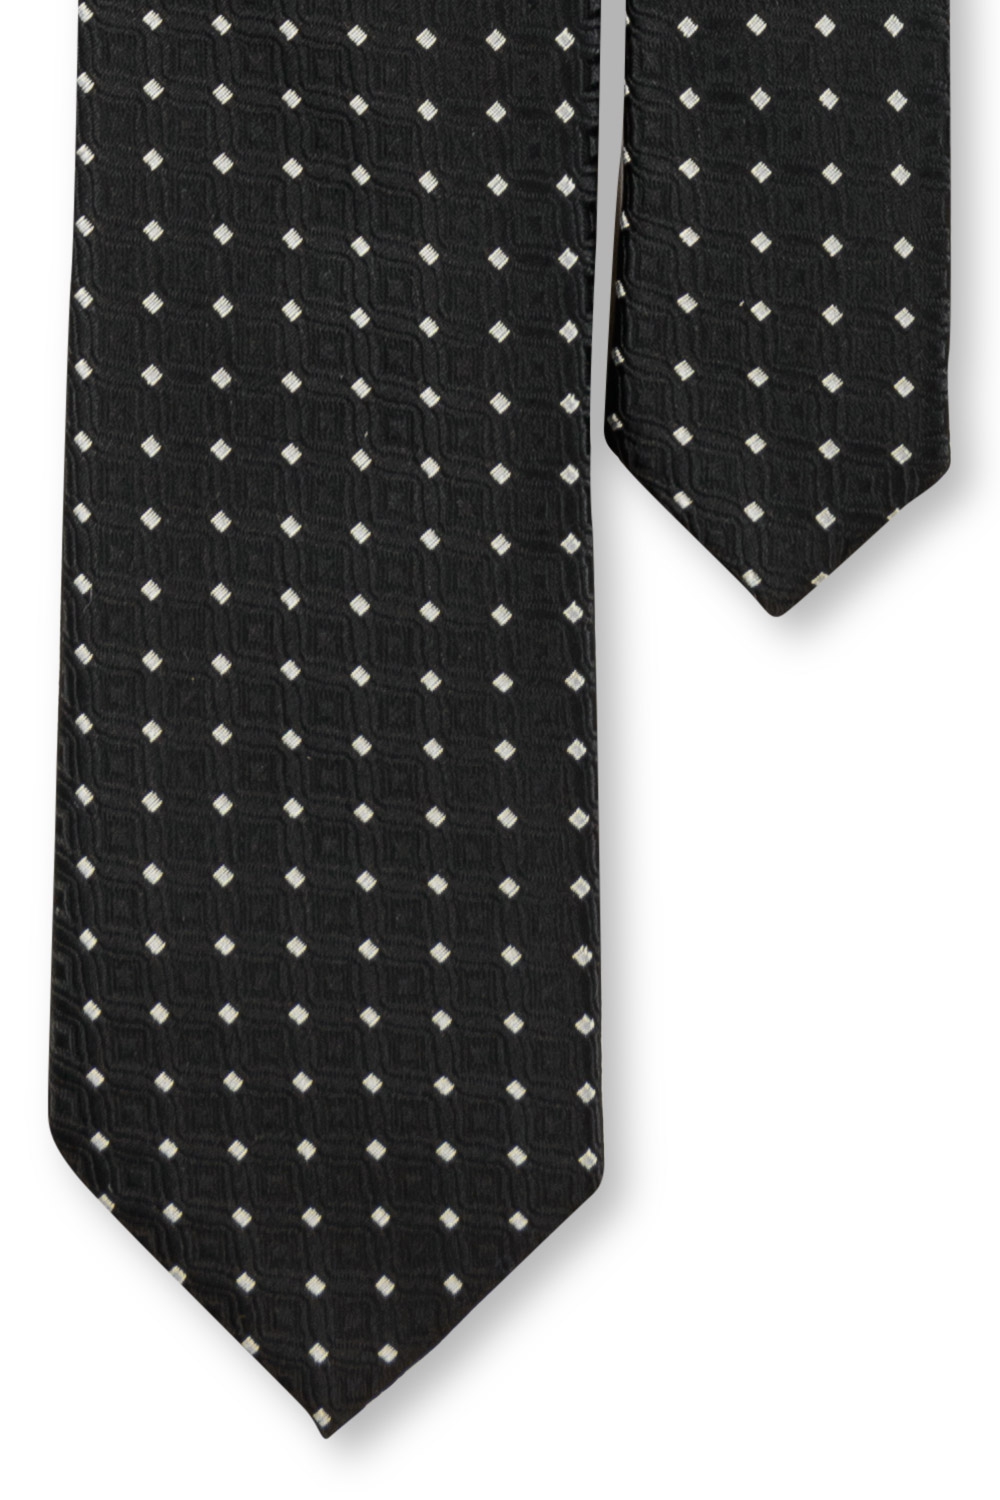 Cravata poliester neagra cu puncte 3